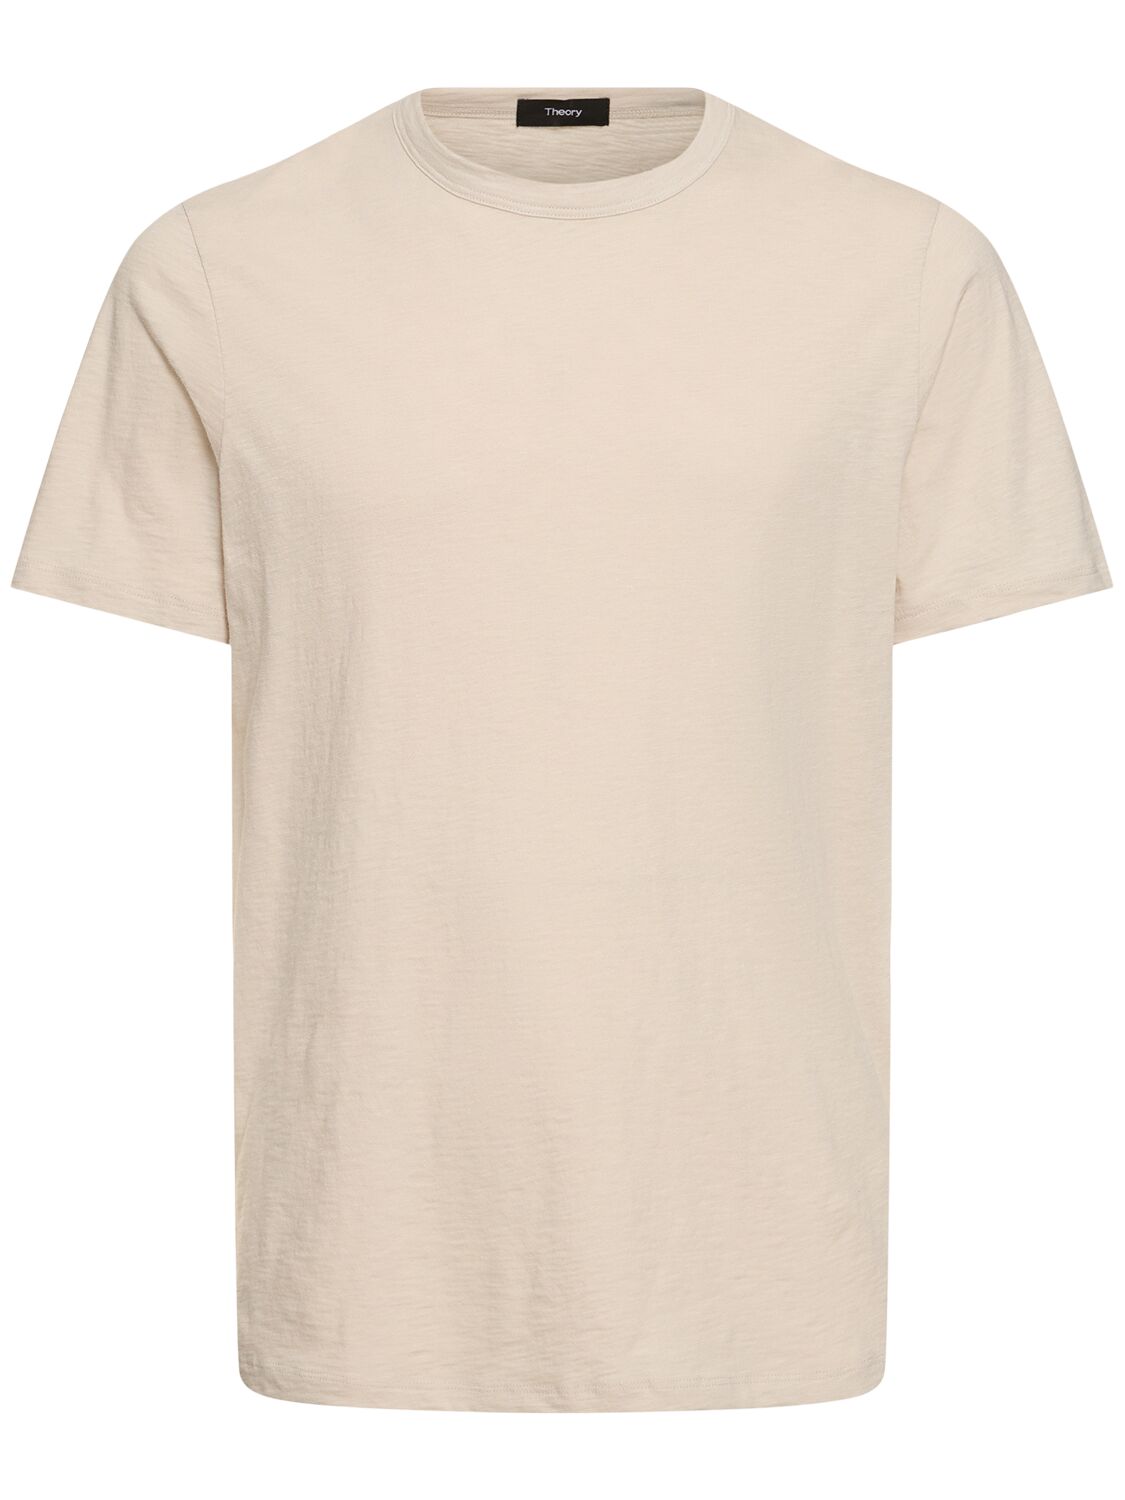 Luxe Cotton Short Sleeve T-shirt